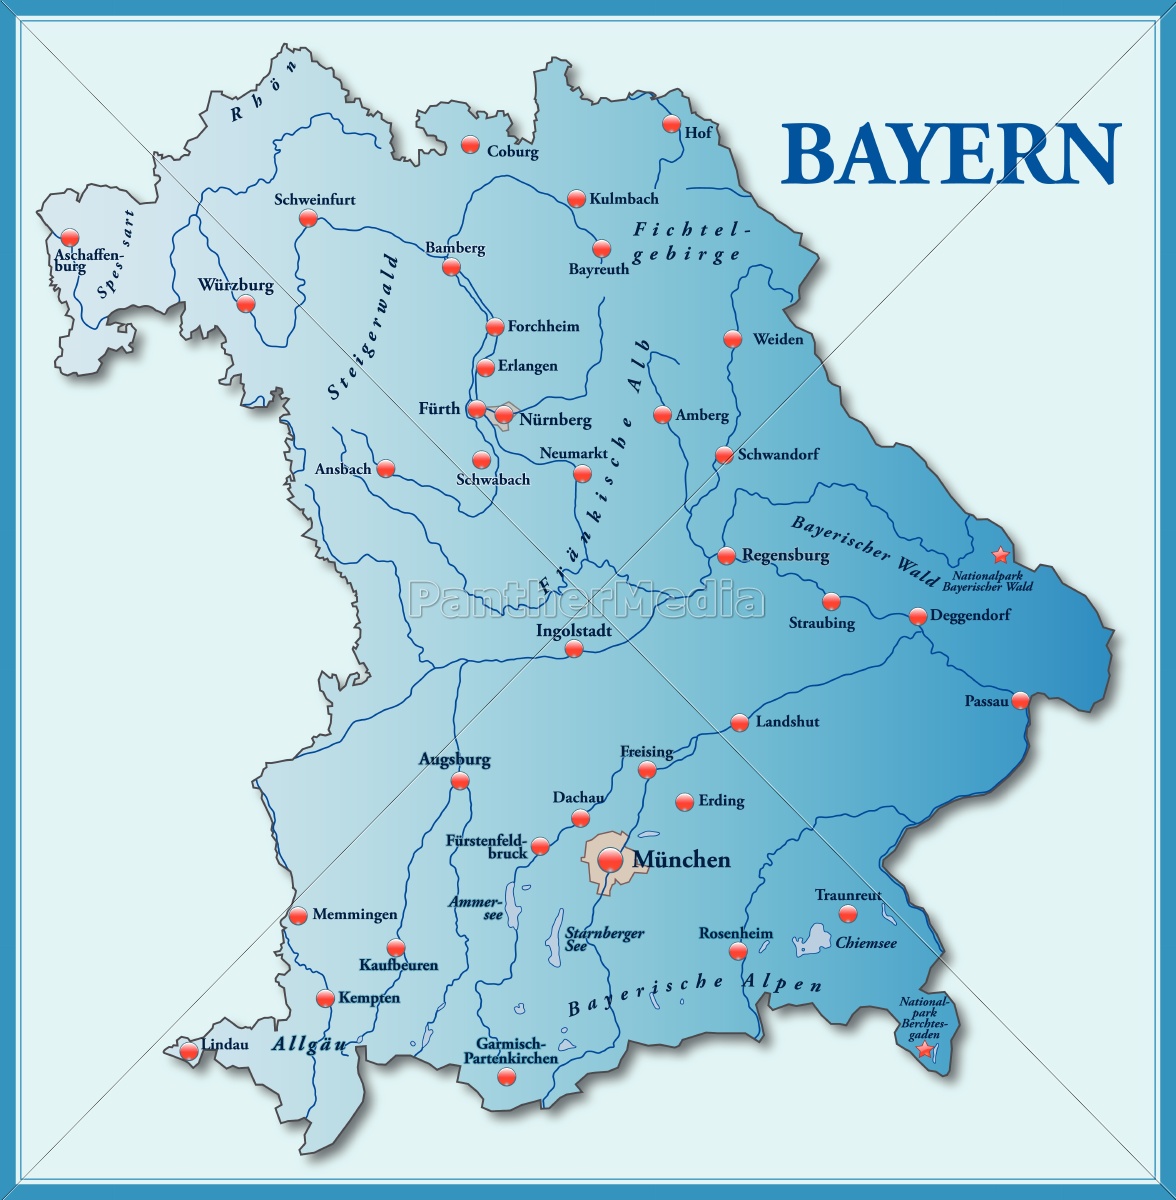 kort over bayern som et oversigtskort i blå - Stockphoto 10635159